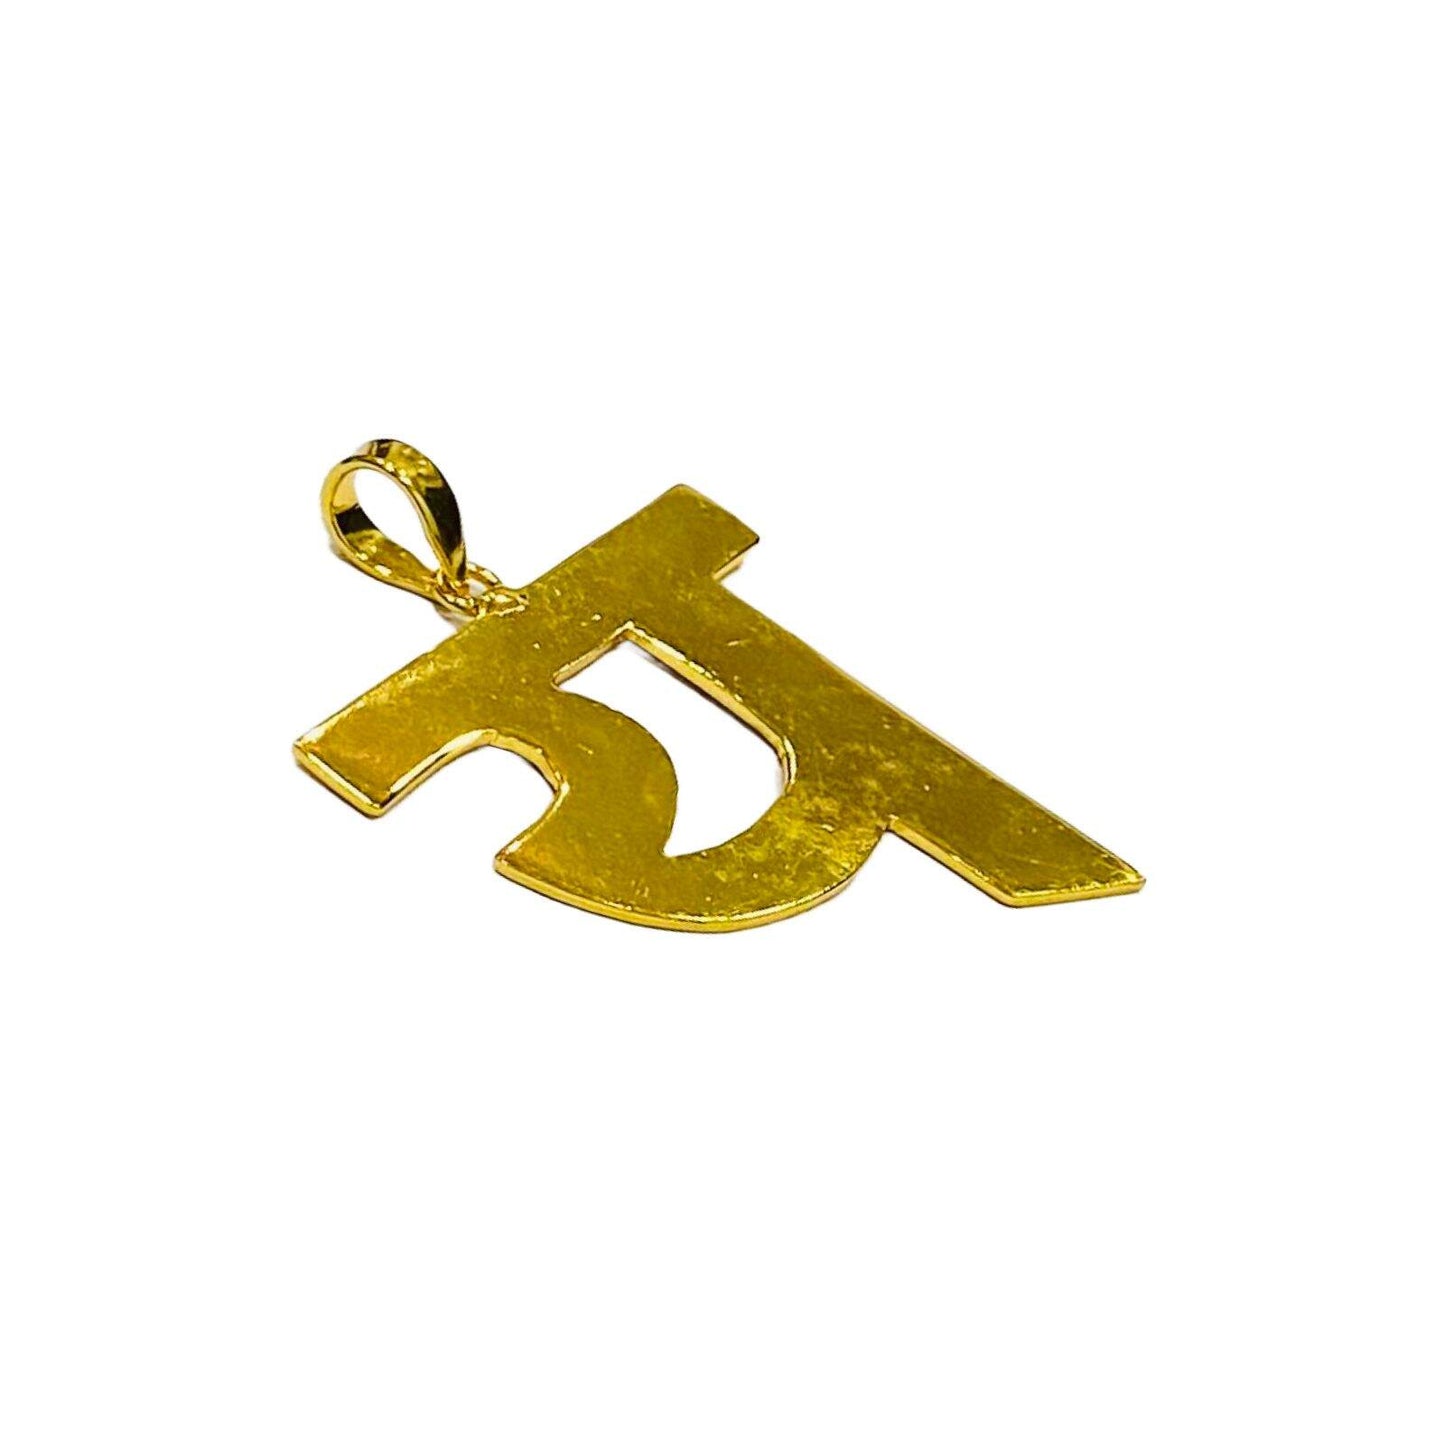 Alphabet Locket | Hindi Jewelry | Costume Jewellery | य Necklace